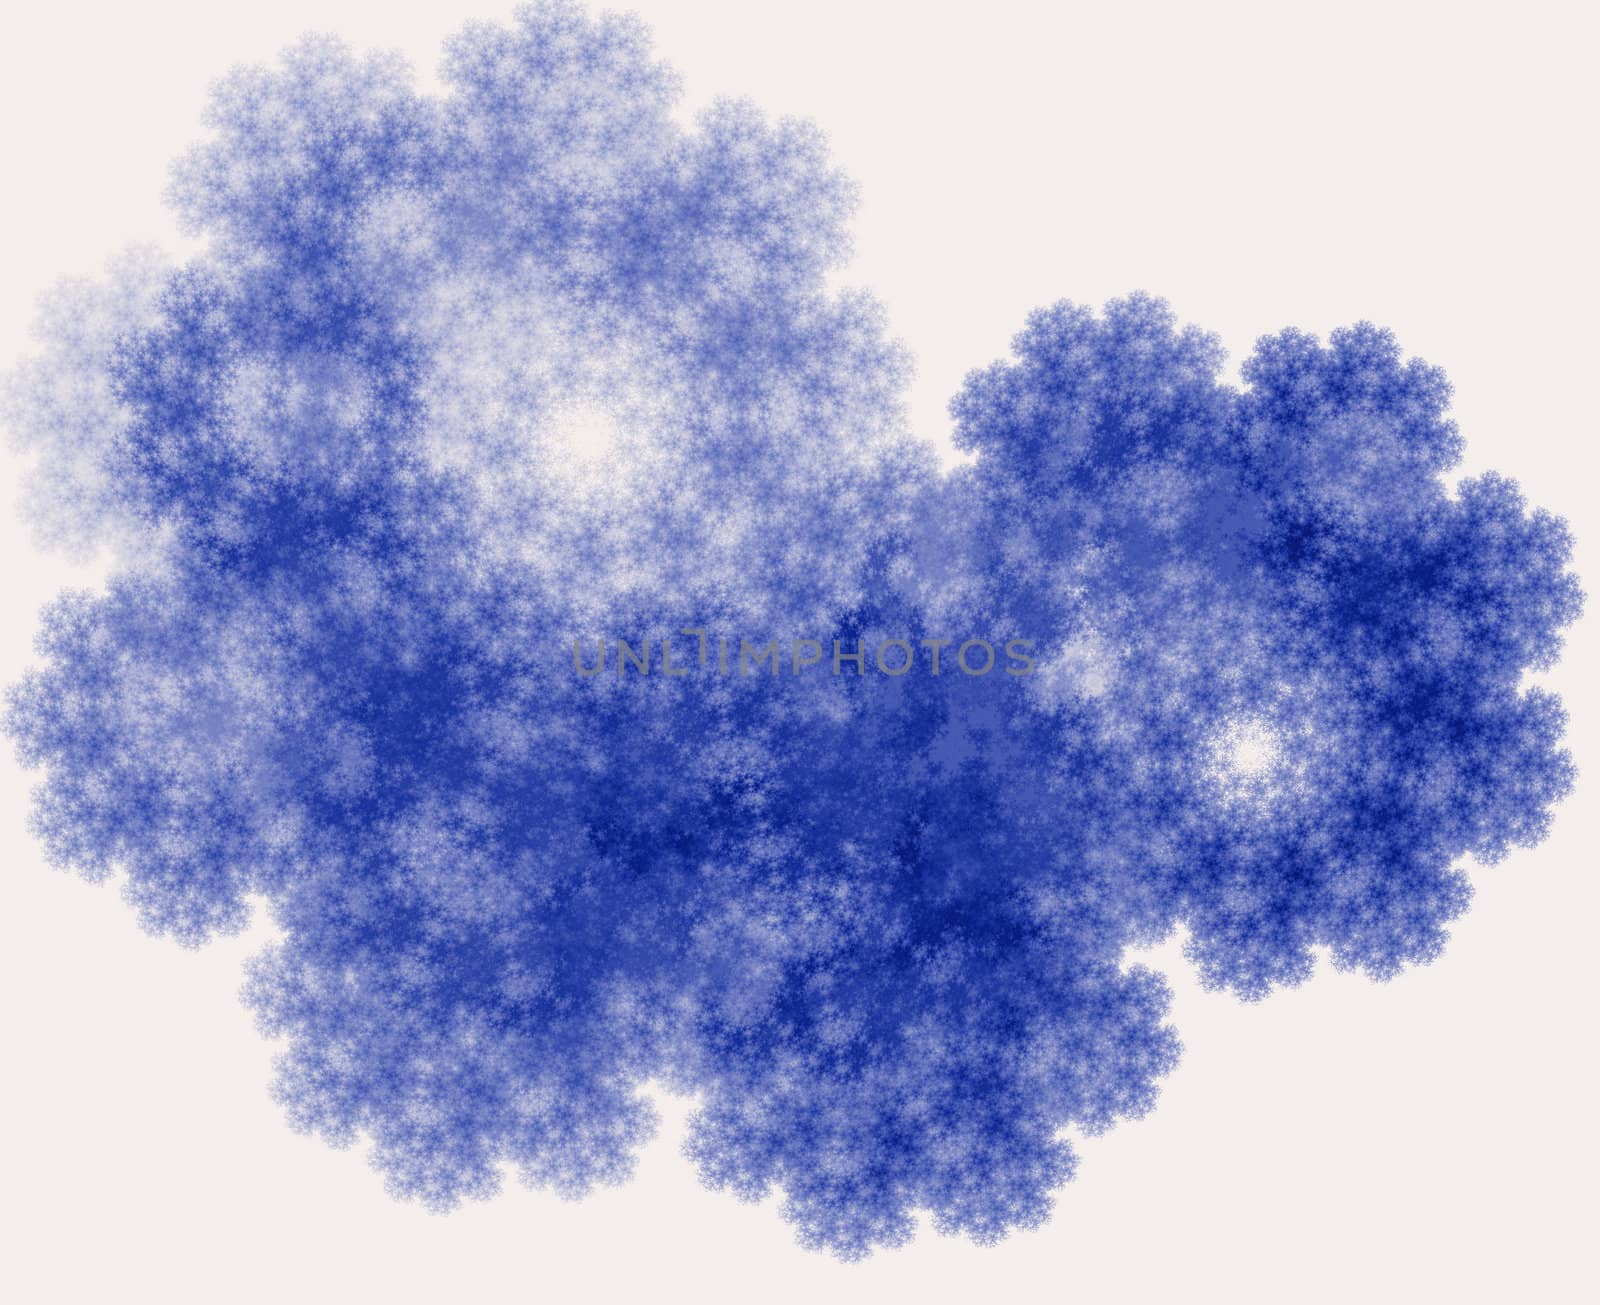 fractal sponge in blue shades/ tones